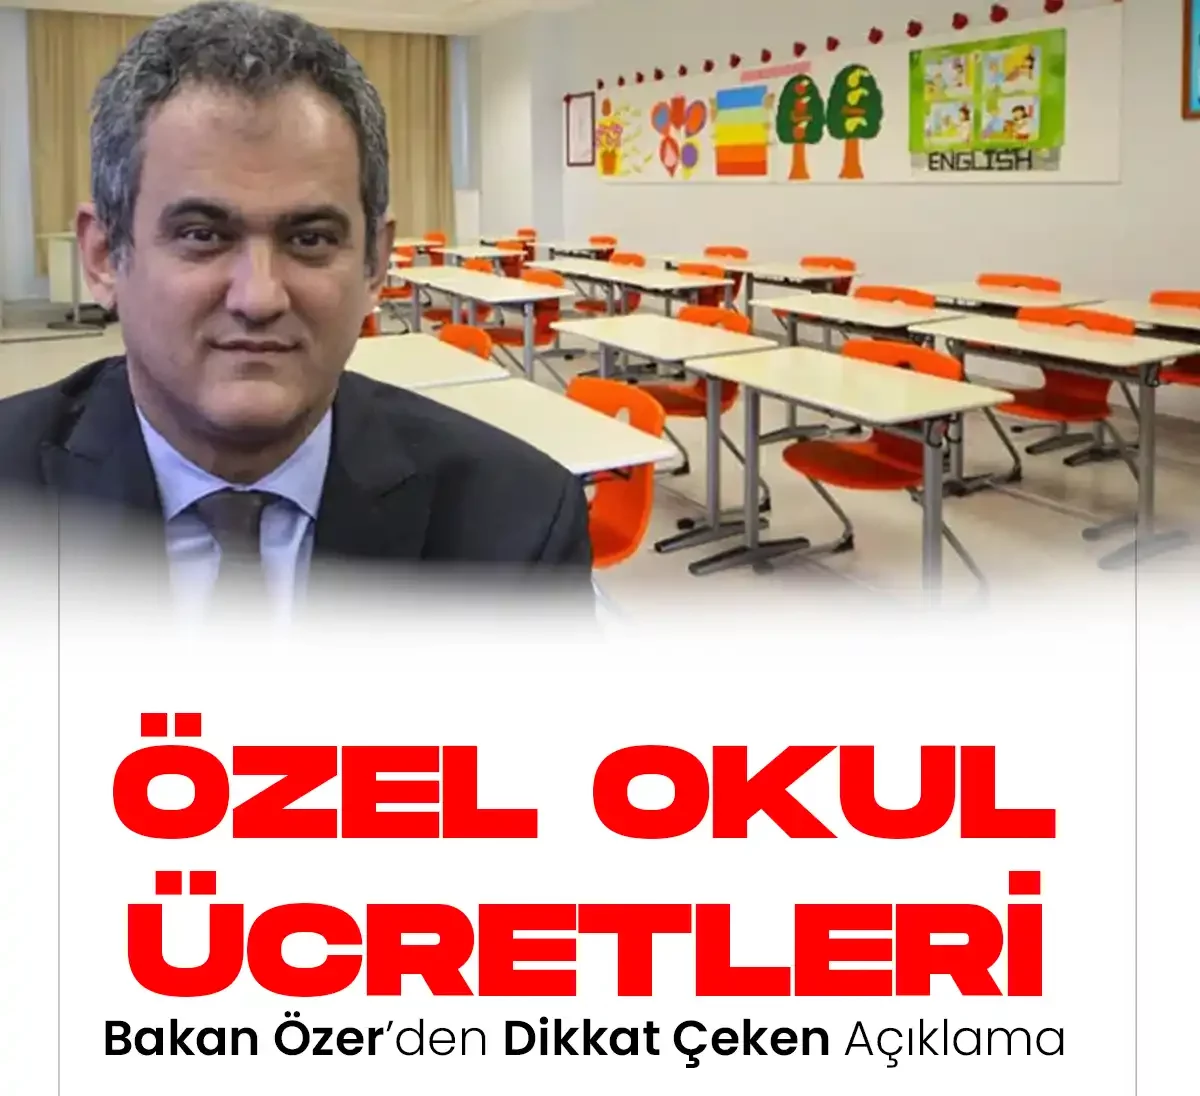 Milli Eğitim Bakanı Mahmut Özer'den özel okul ücretleri açıklaması.